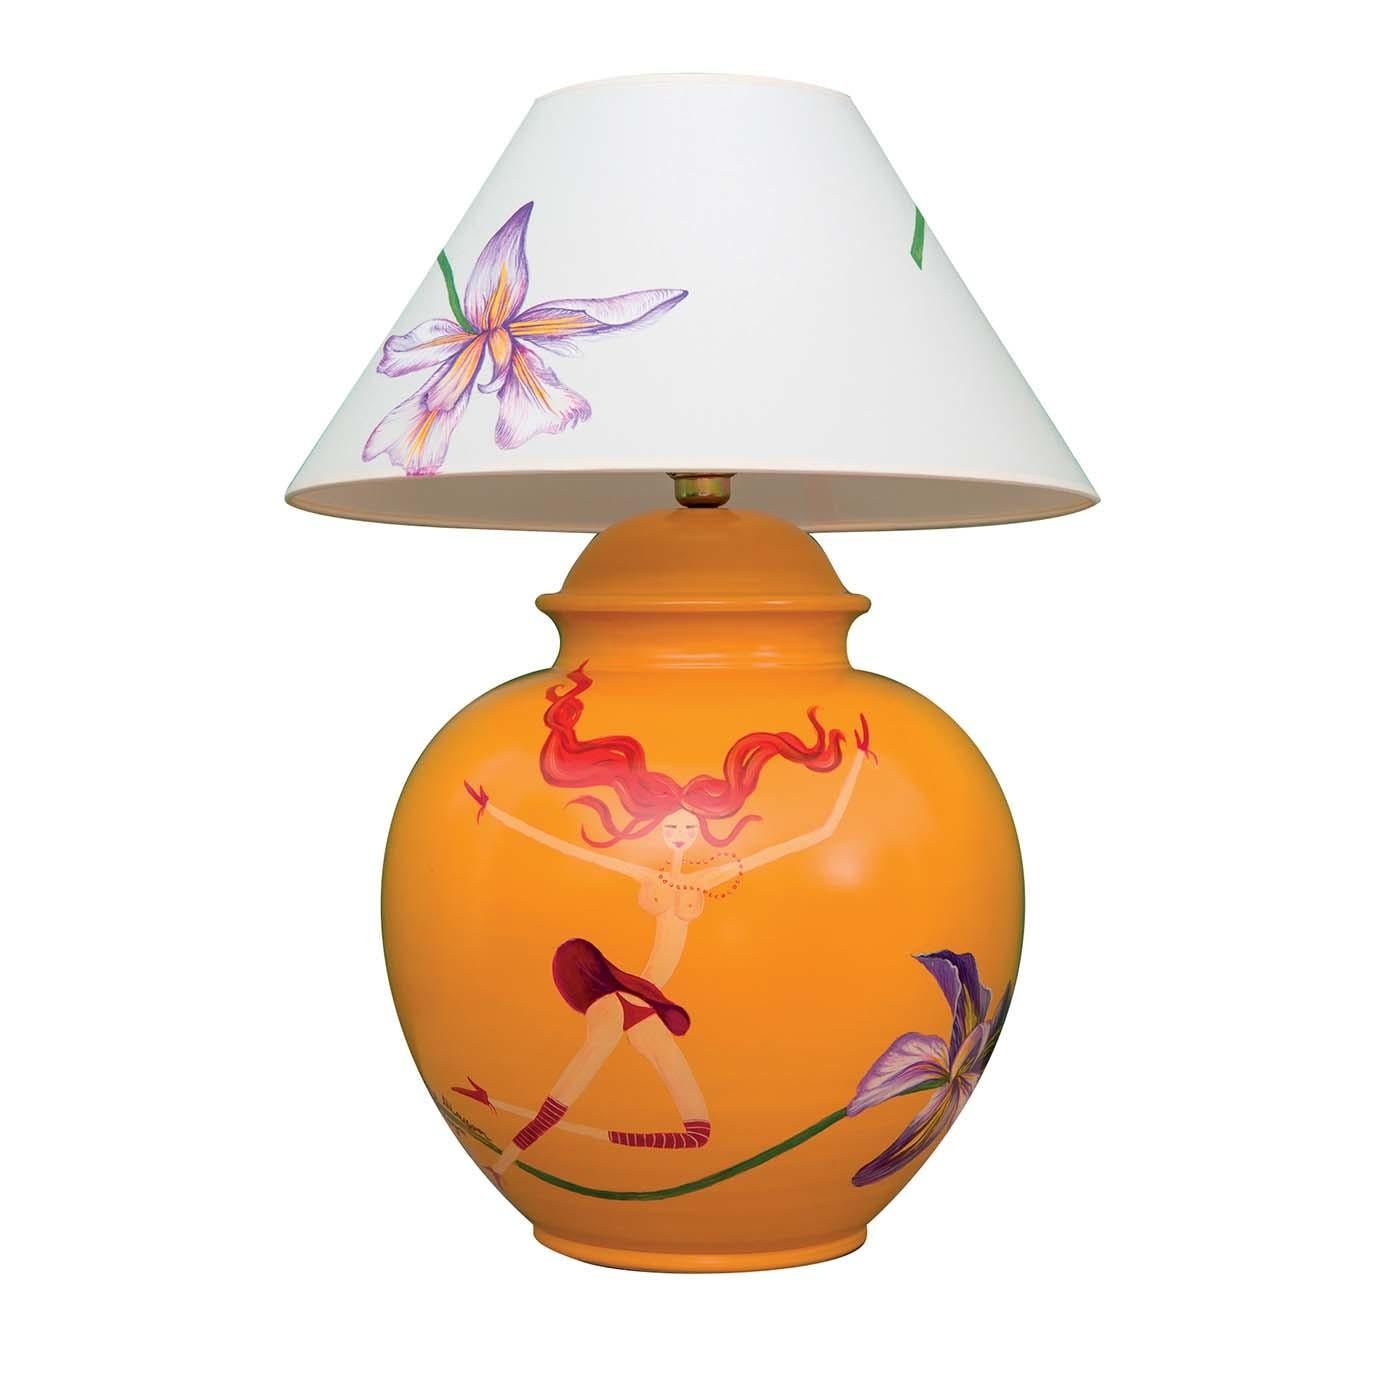 Colorée et raffinée, cette splendide lampe de table est composée d'une base fabriquée à la main en argile laquée orange et d'un abat-jour en tissu blanc avec de grands lys blancs peints à la main. Parfaitement adapté à un intérieur éclectique et